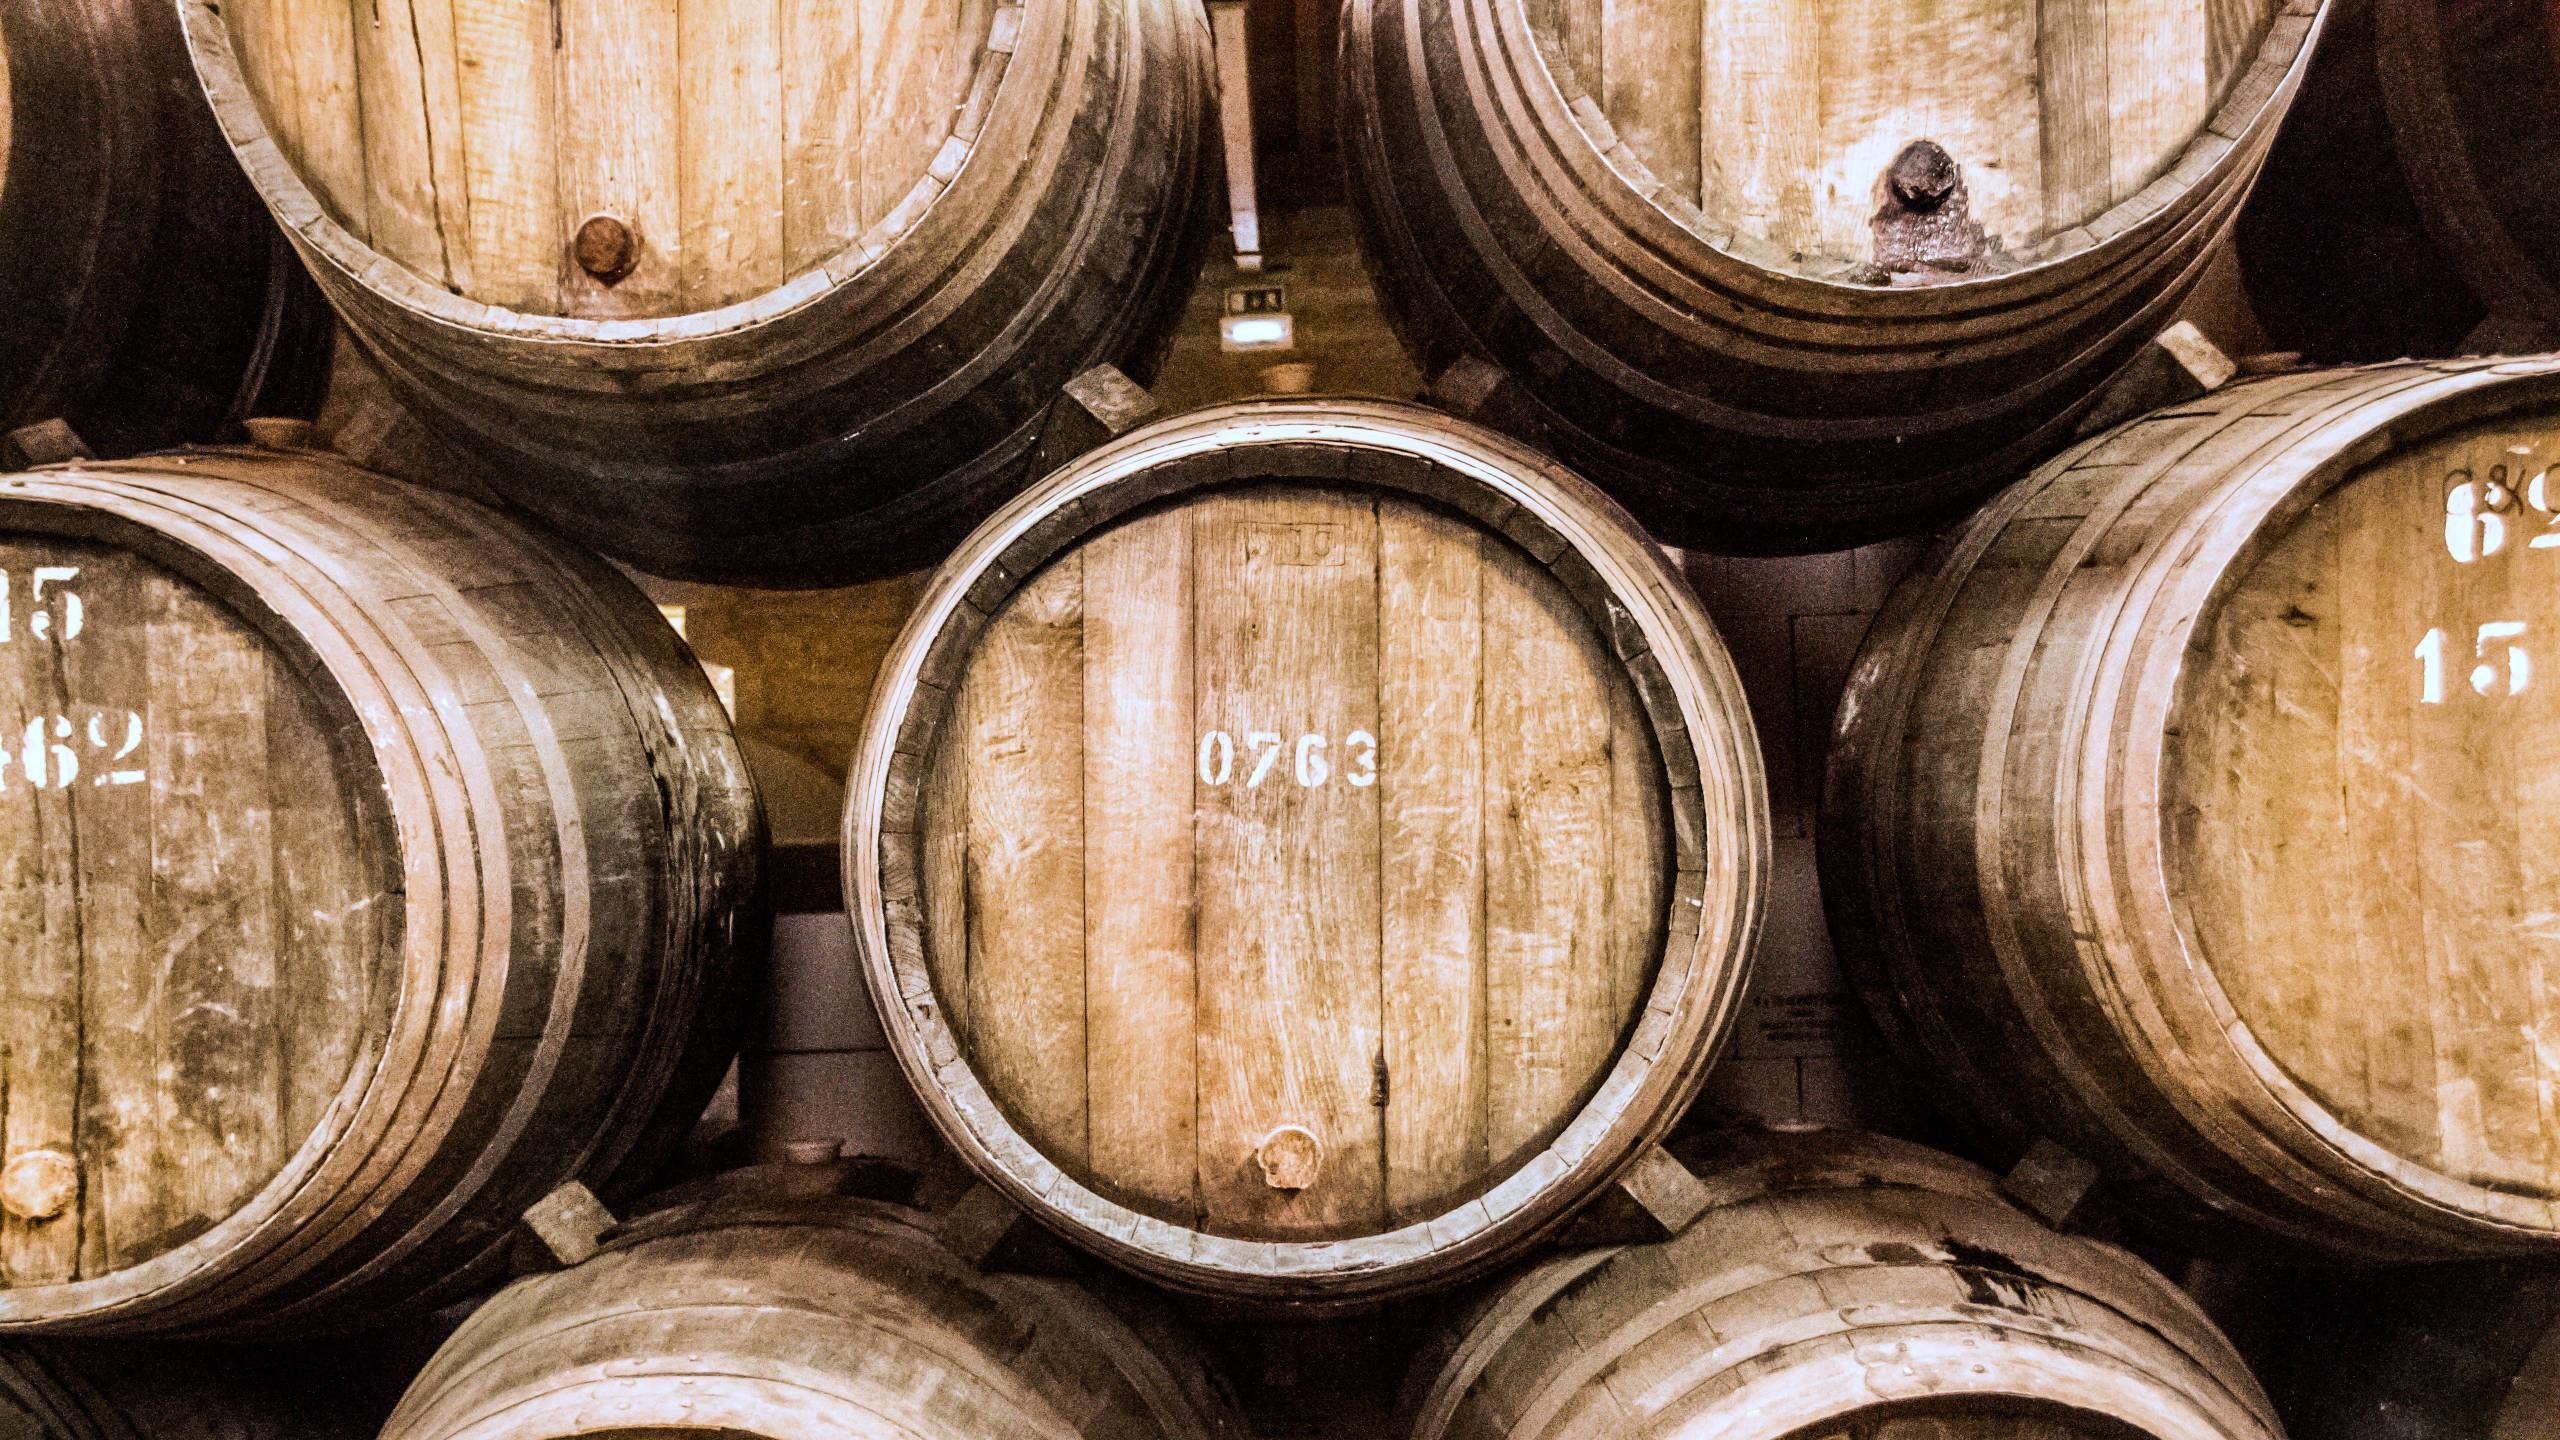 Barrels of fortified wine